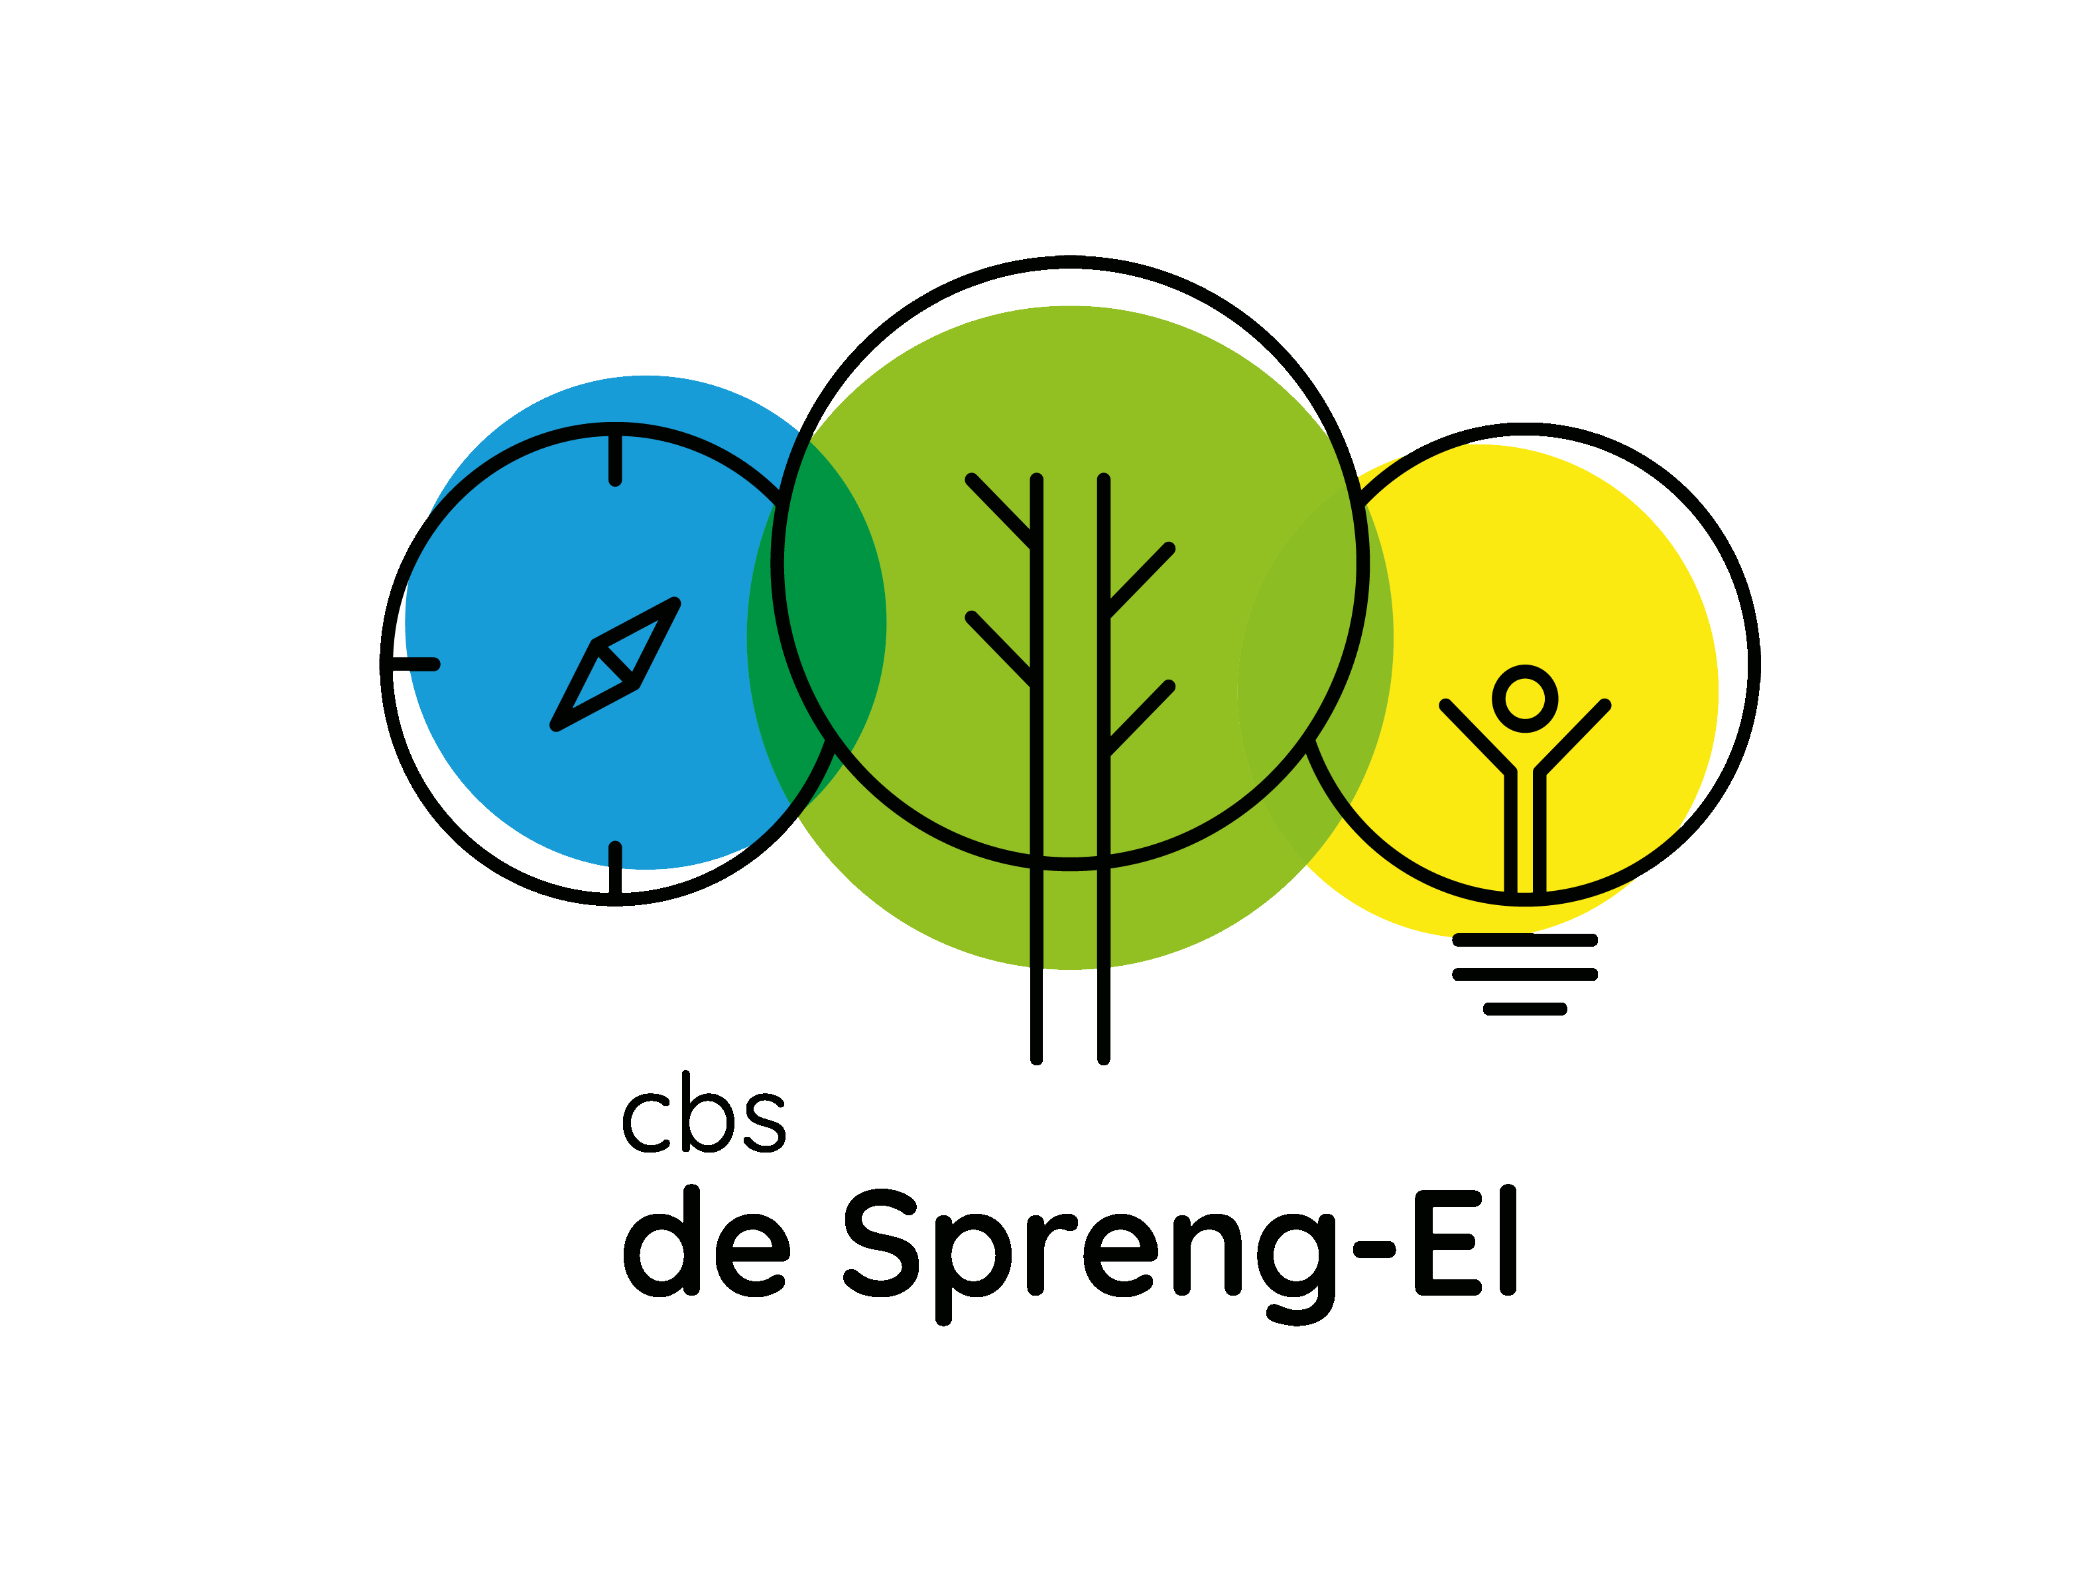 CBS De Spreng-el